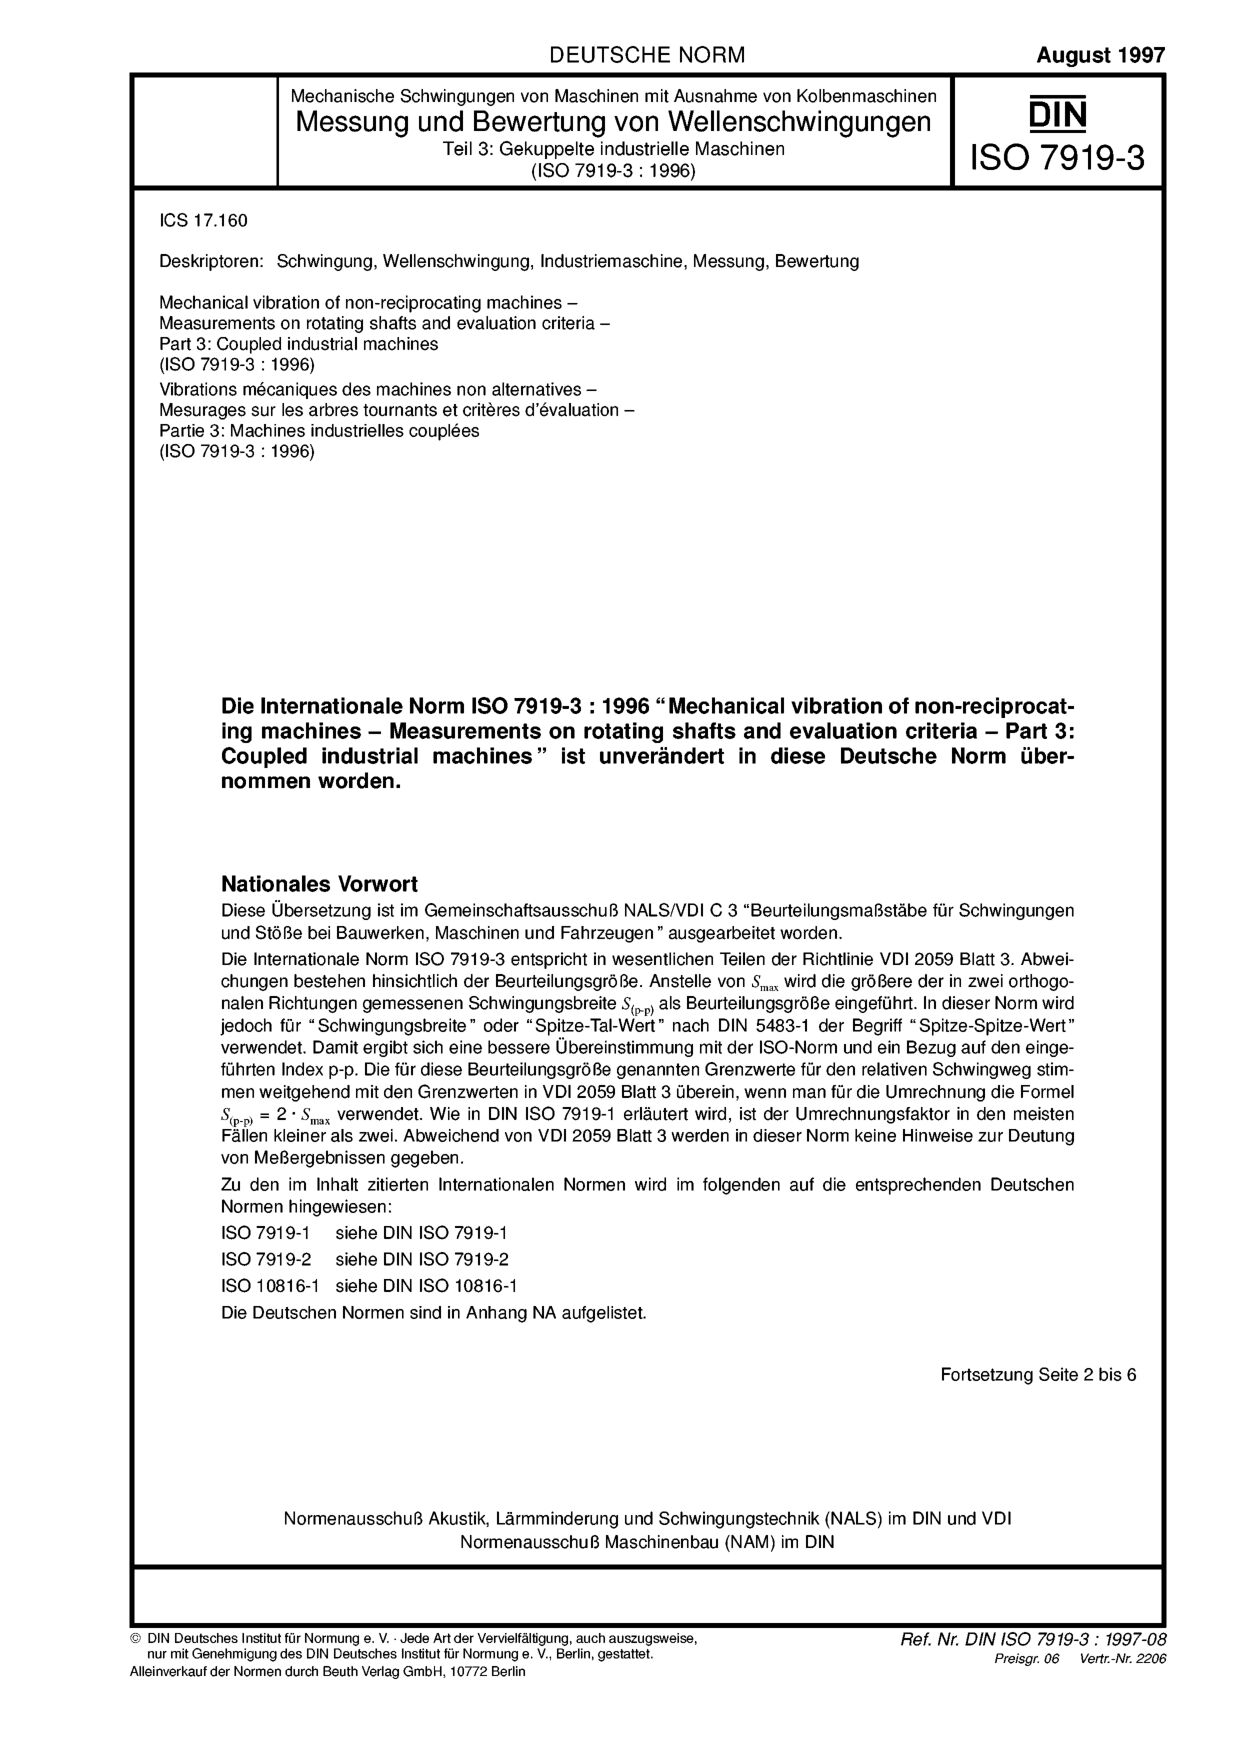 DIN ISO 7919-3:1997-08封面图